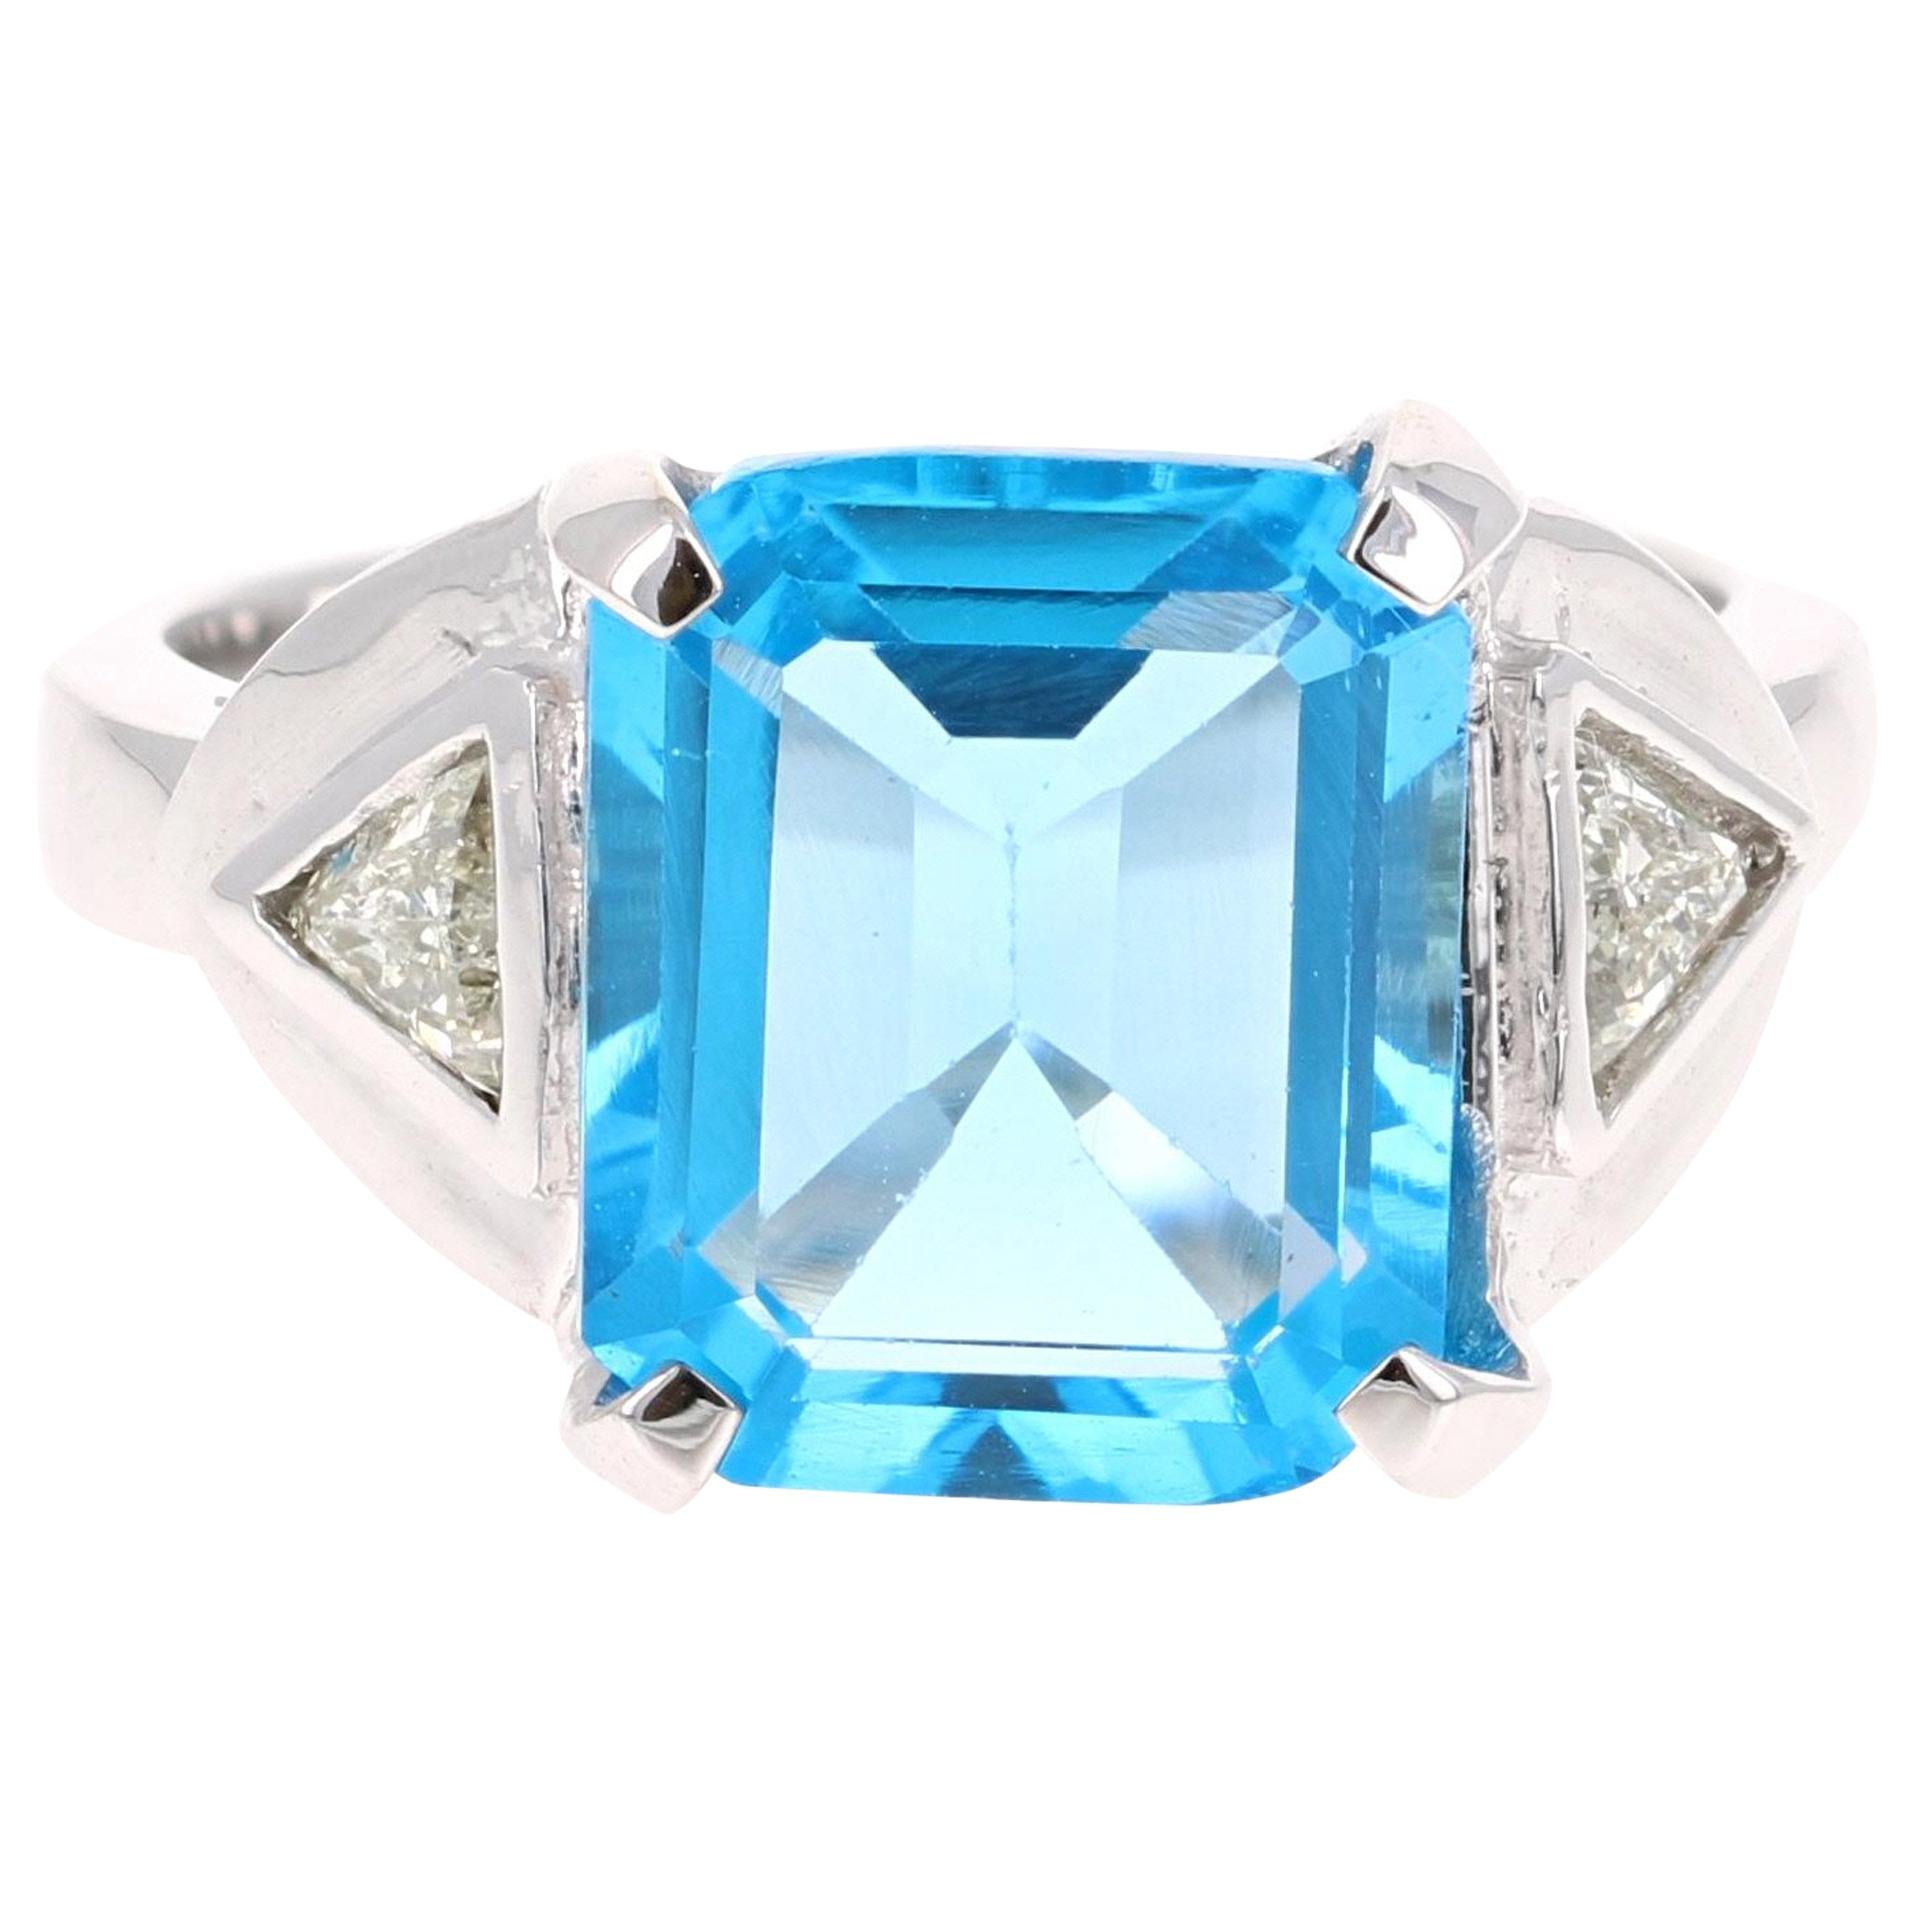 6.94 Carat Blue Topaz Diamond 14 Karat White Gold Ring